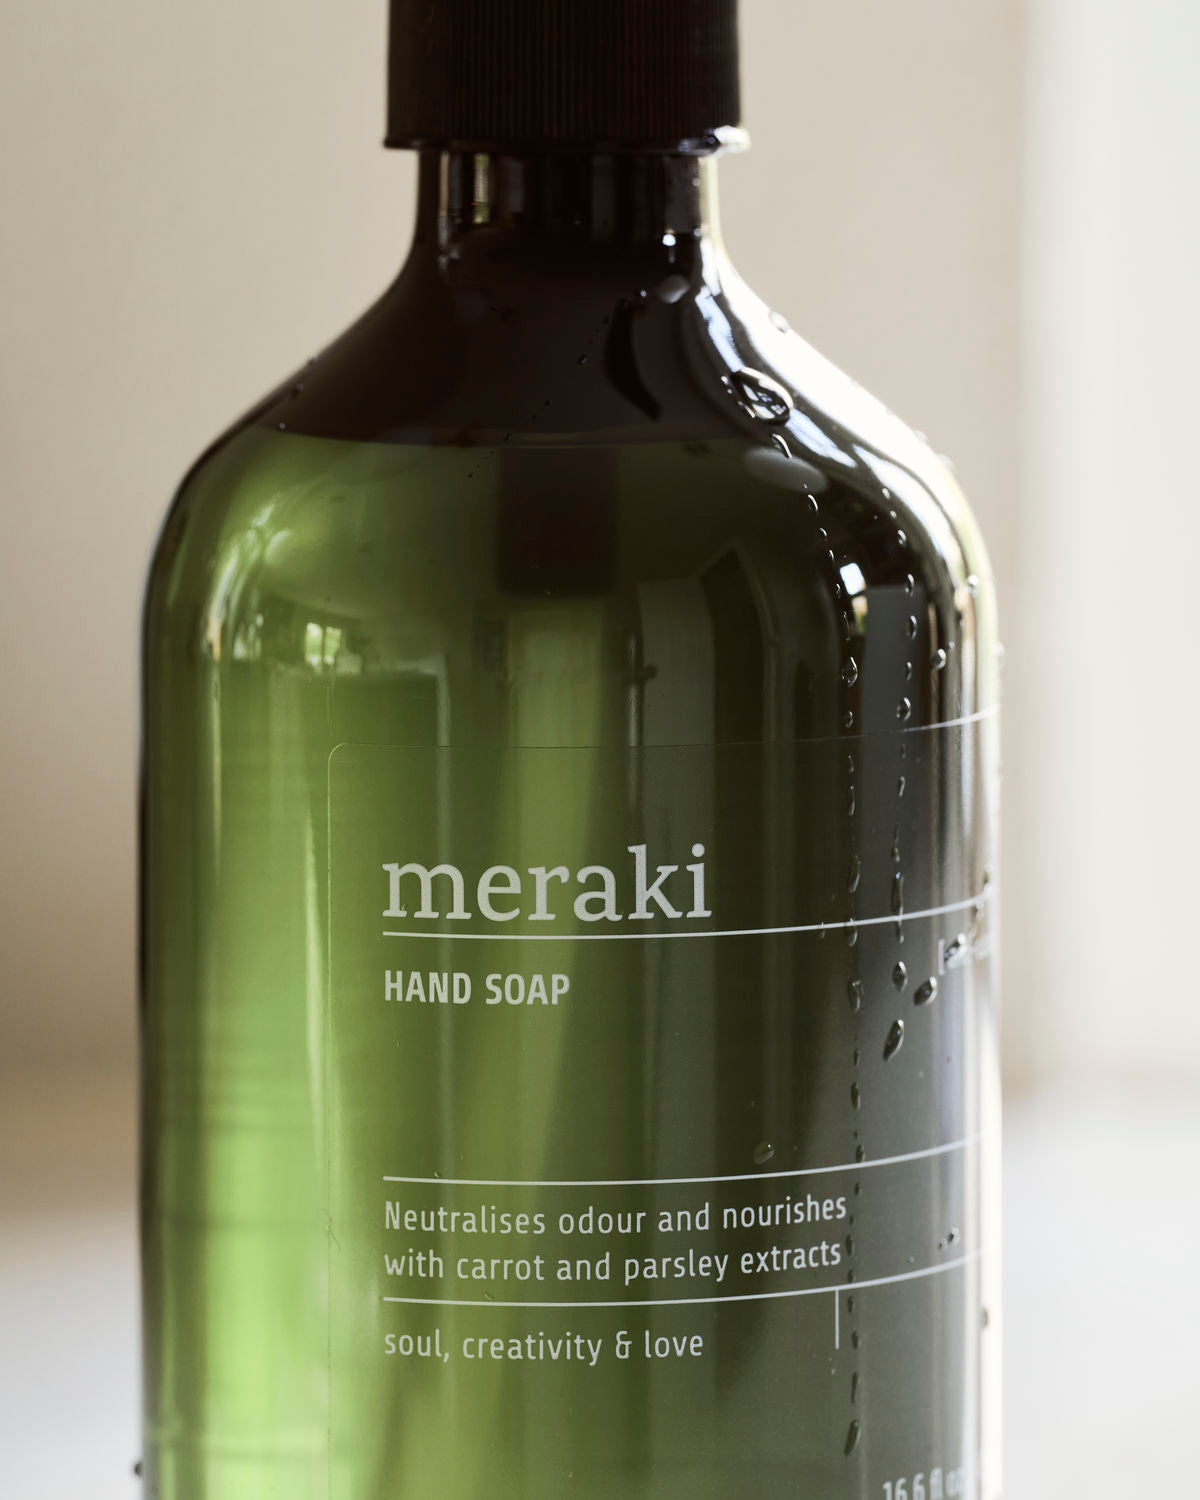 Meraki - Hand soap, Anti-odour